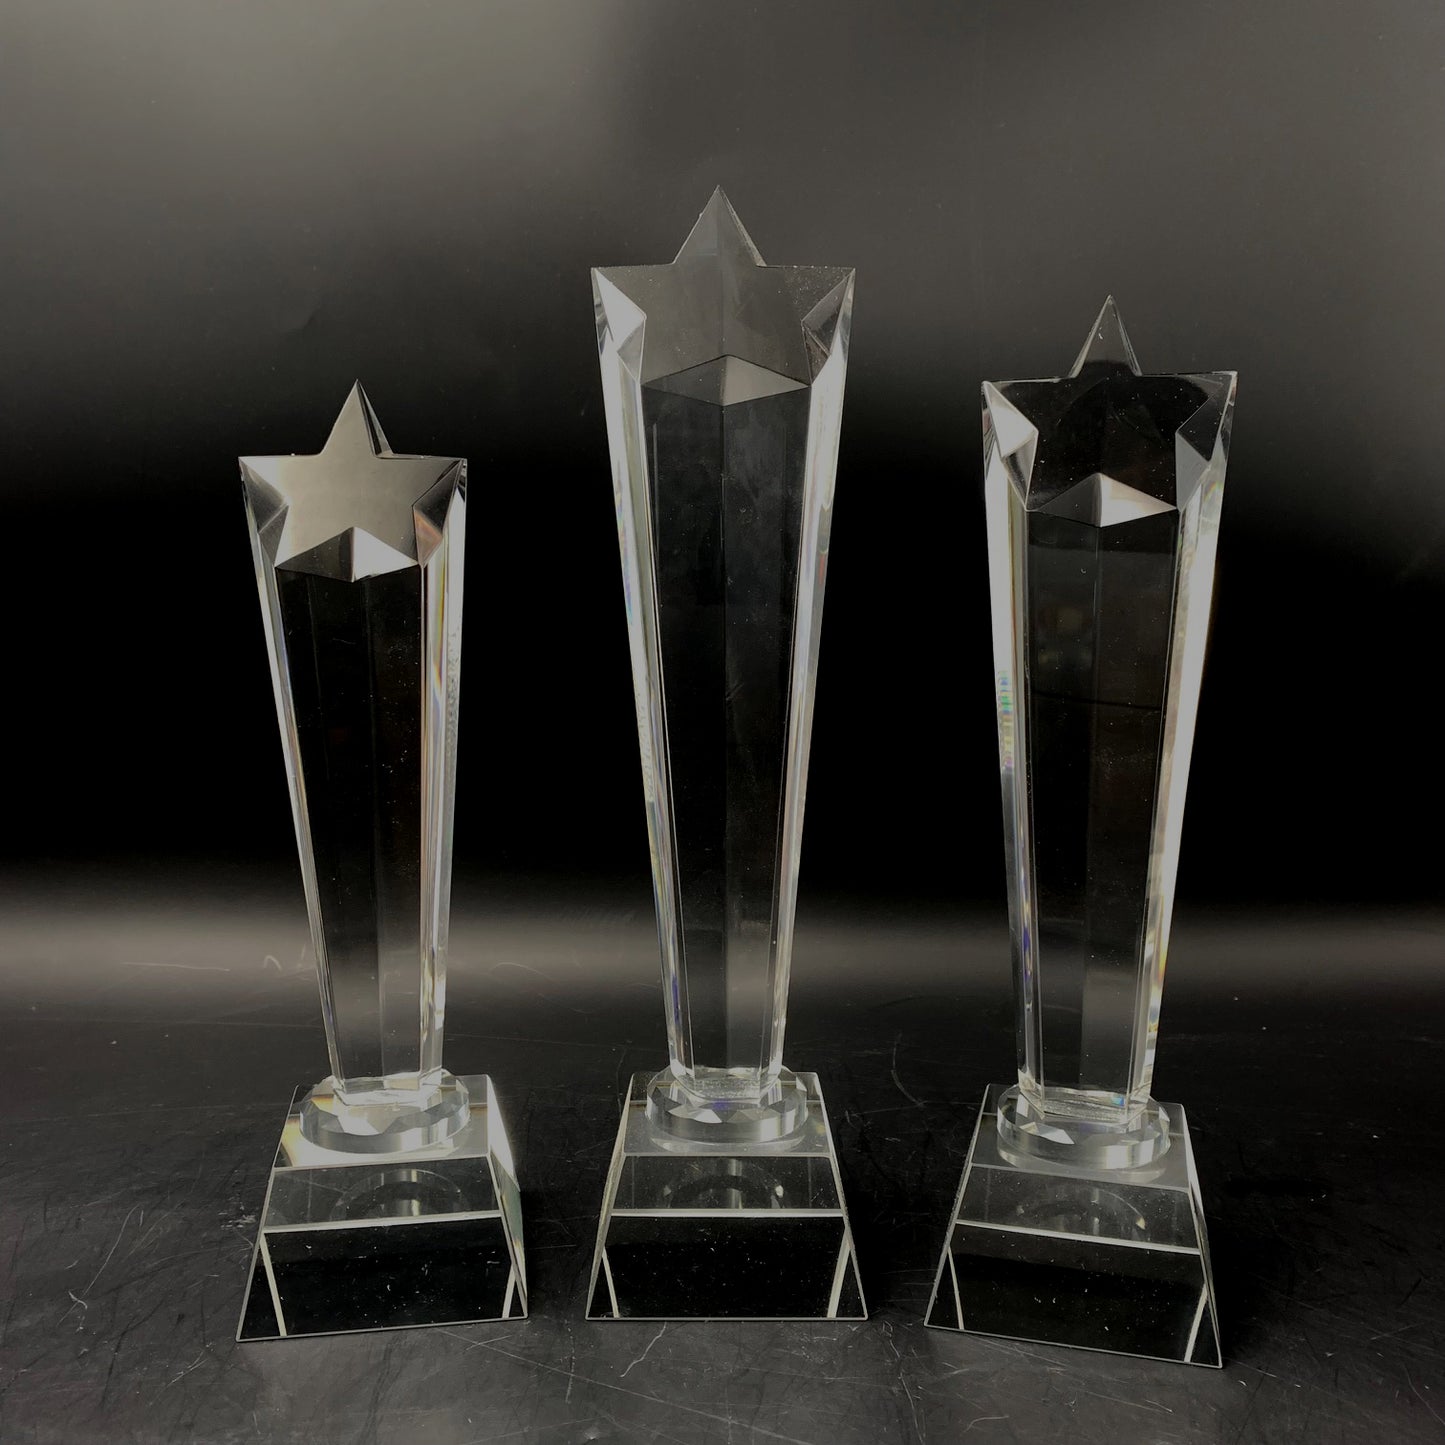 Star Crystal Trophy Award